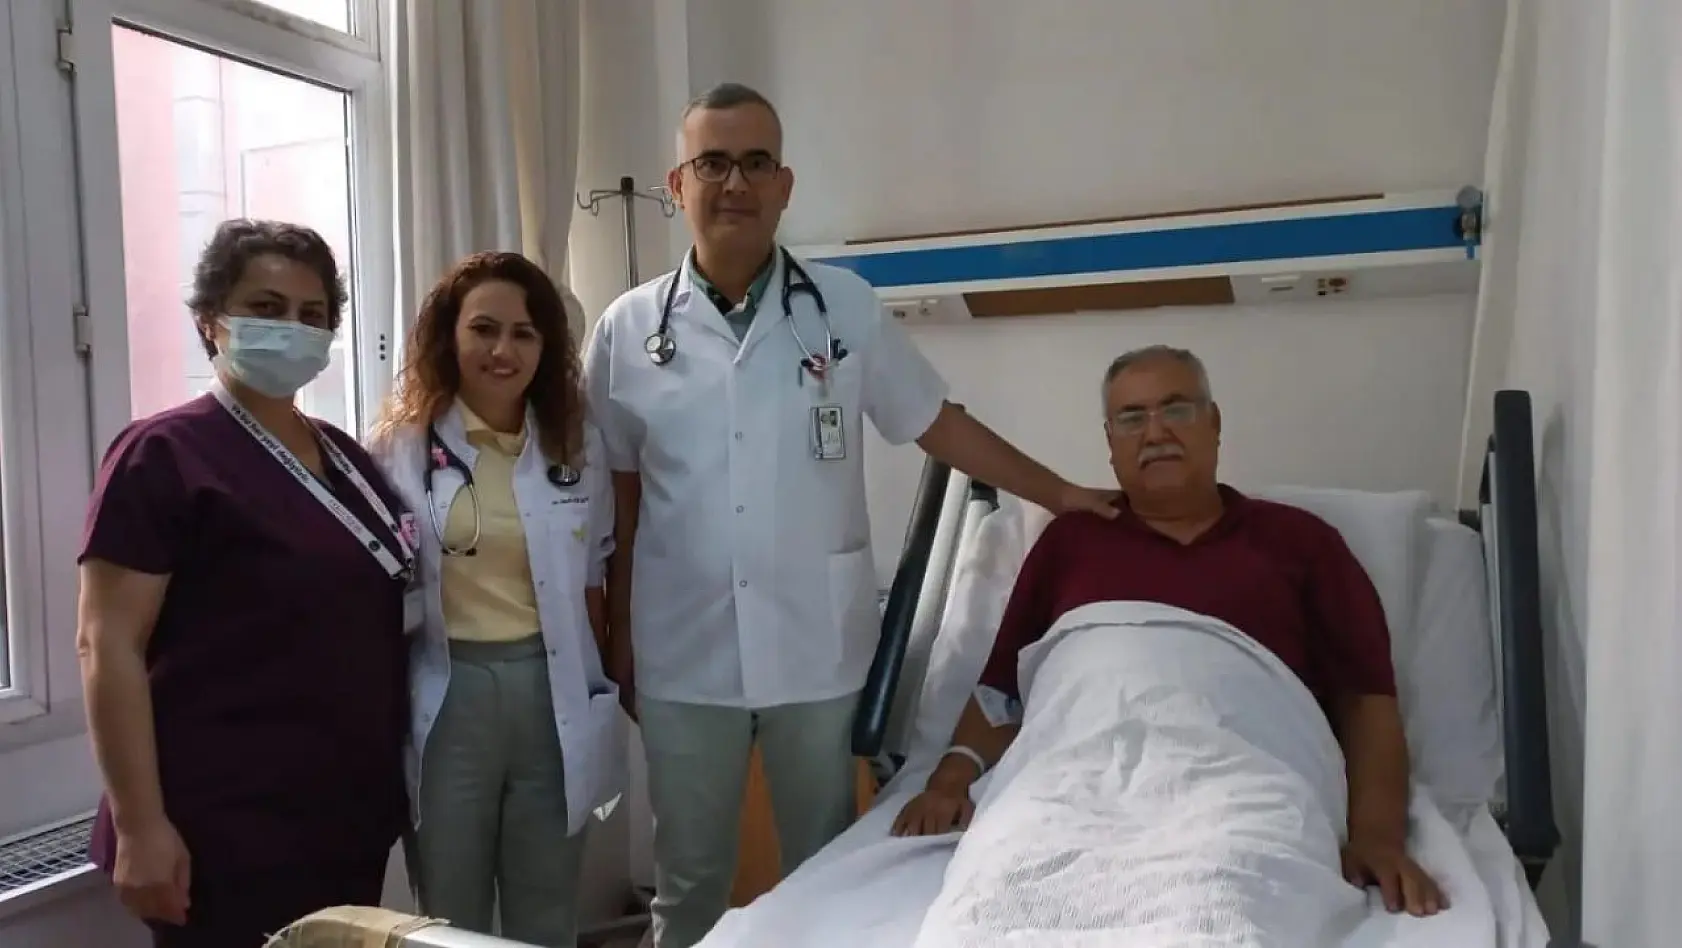 ADÜ öğretim üyeleri Aydın'da ilk kez uygulanan yöntemle hastayı sağlığına kavuşturdu